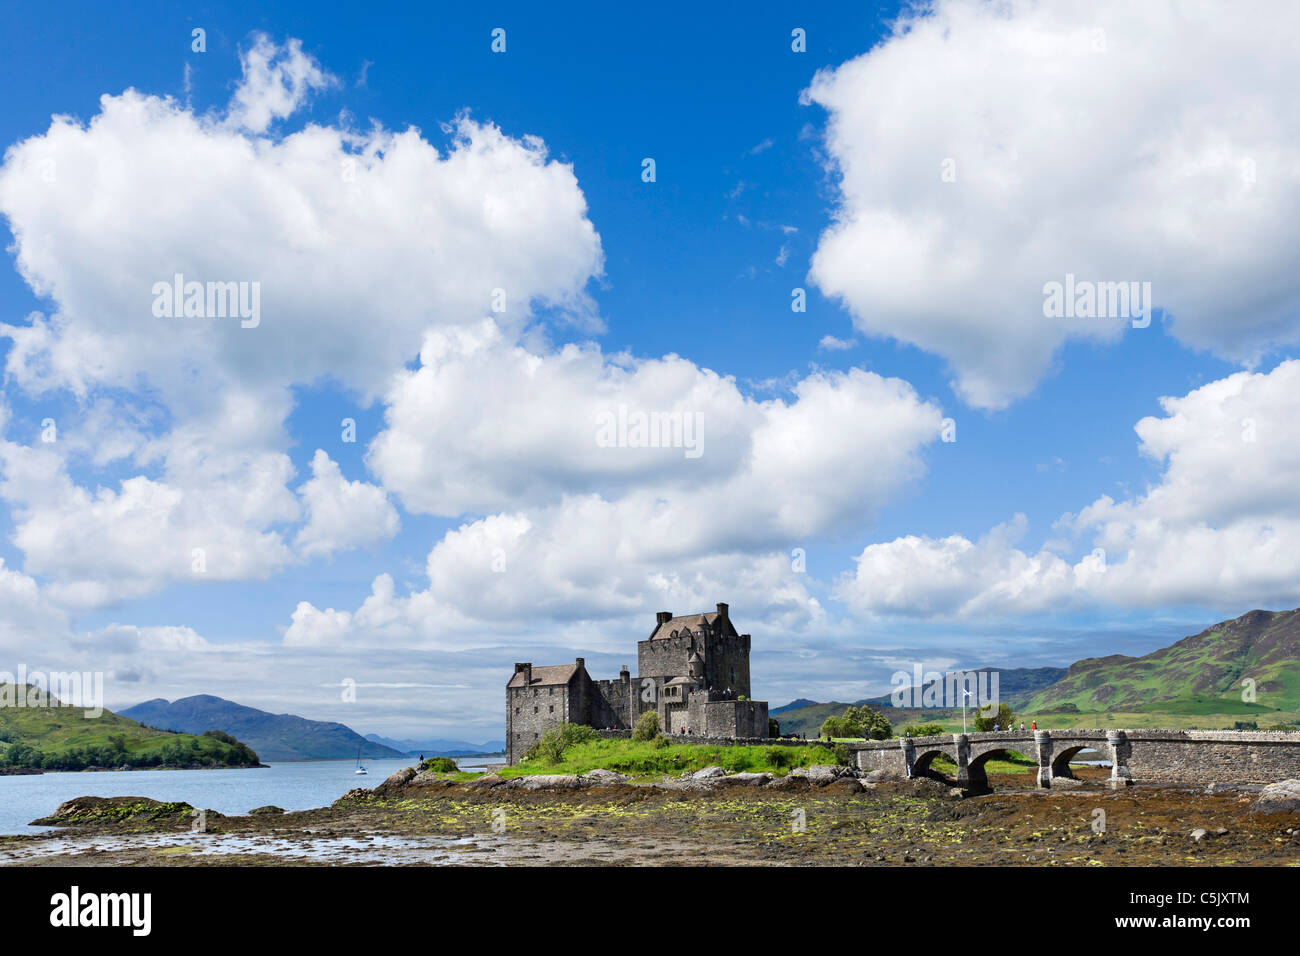 Vue vers le château d'Eilean Donan, Loch Duich, Highland, Écosse, Royaume-Uni. Paysage écossais / paysage / châteaux Banque D'Images